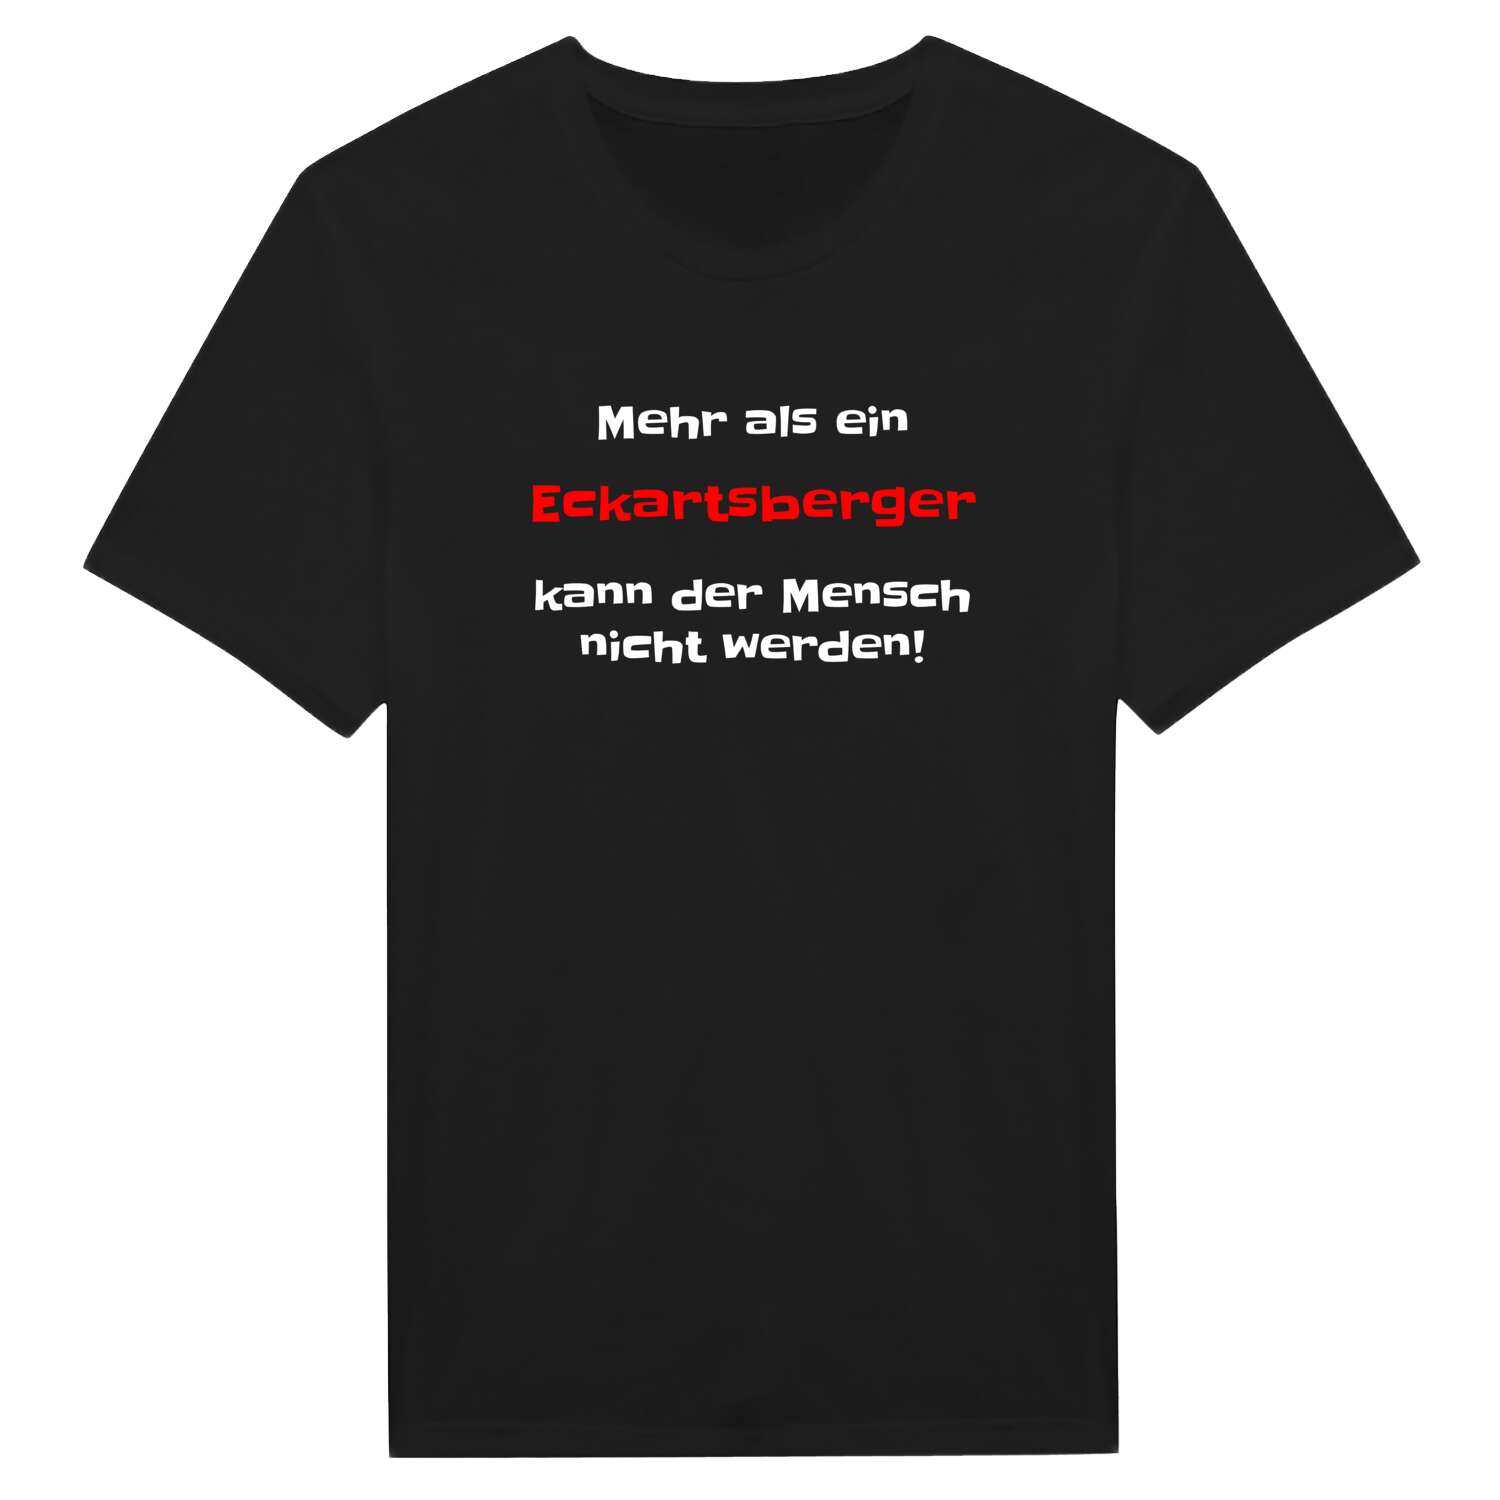 Eckartsberg T-Shirt »Mehr als ein«